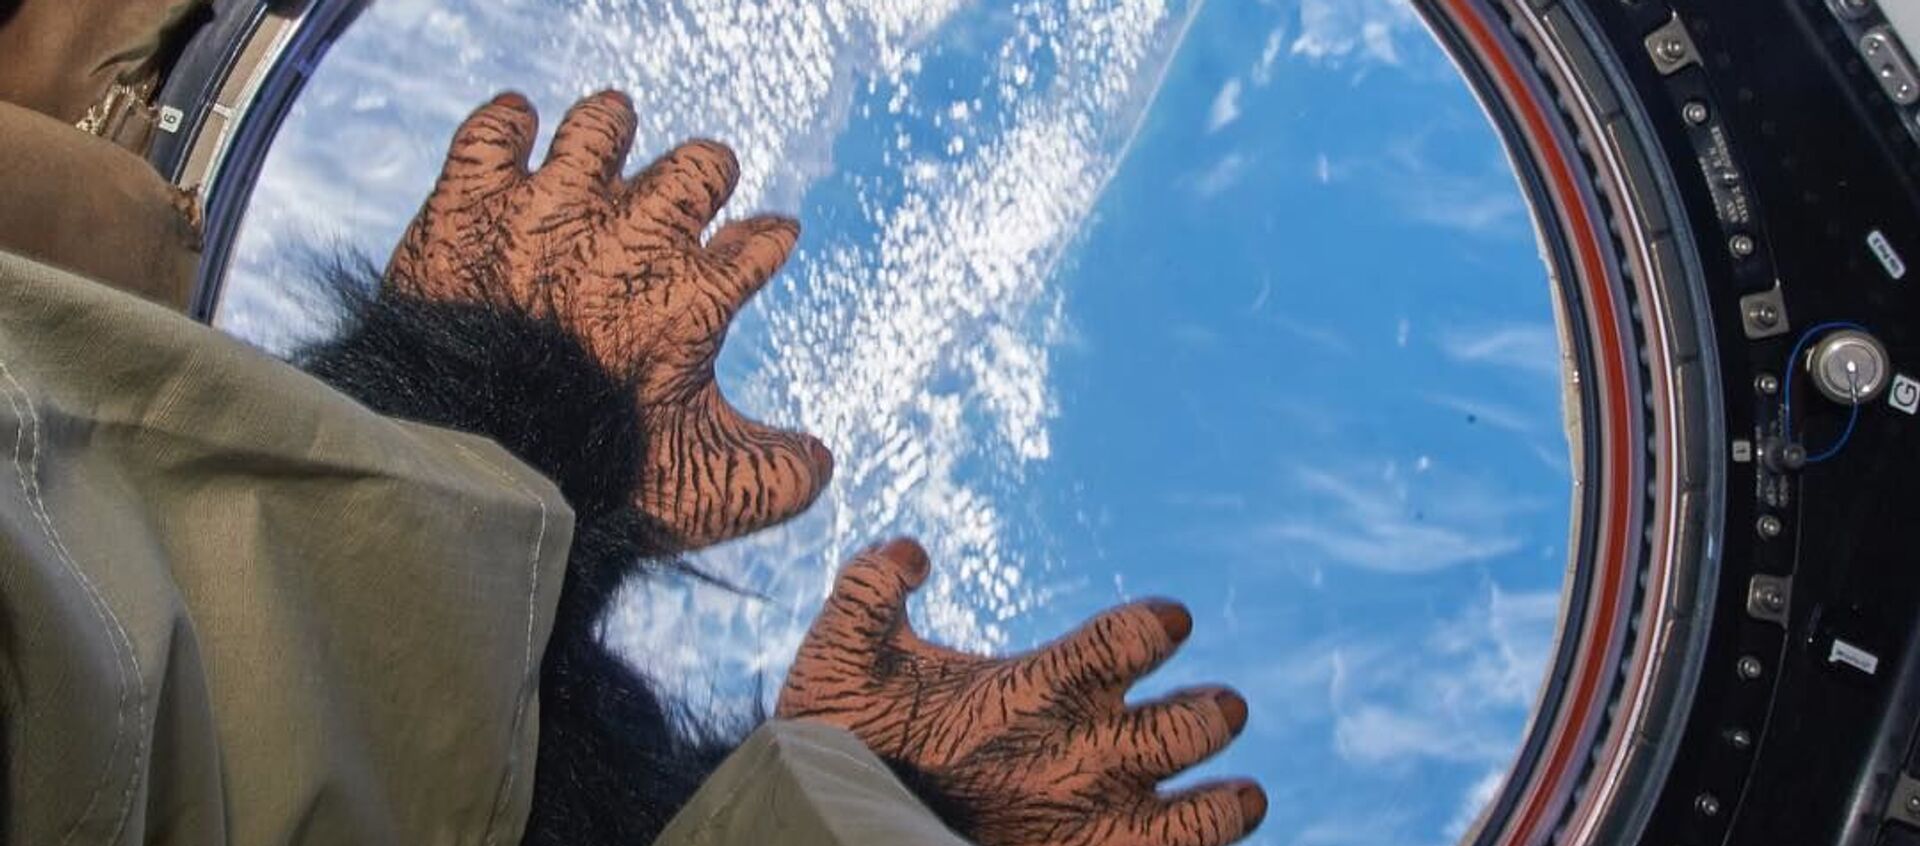 Chú khỉ đồ chơi khỉ trên khoang Trạm ISS - Sputnik Việt Nam, 1920, 12.02.2019